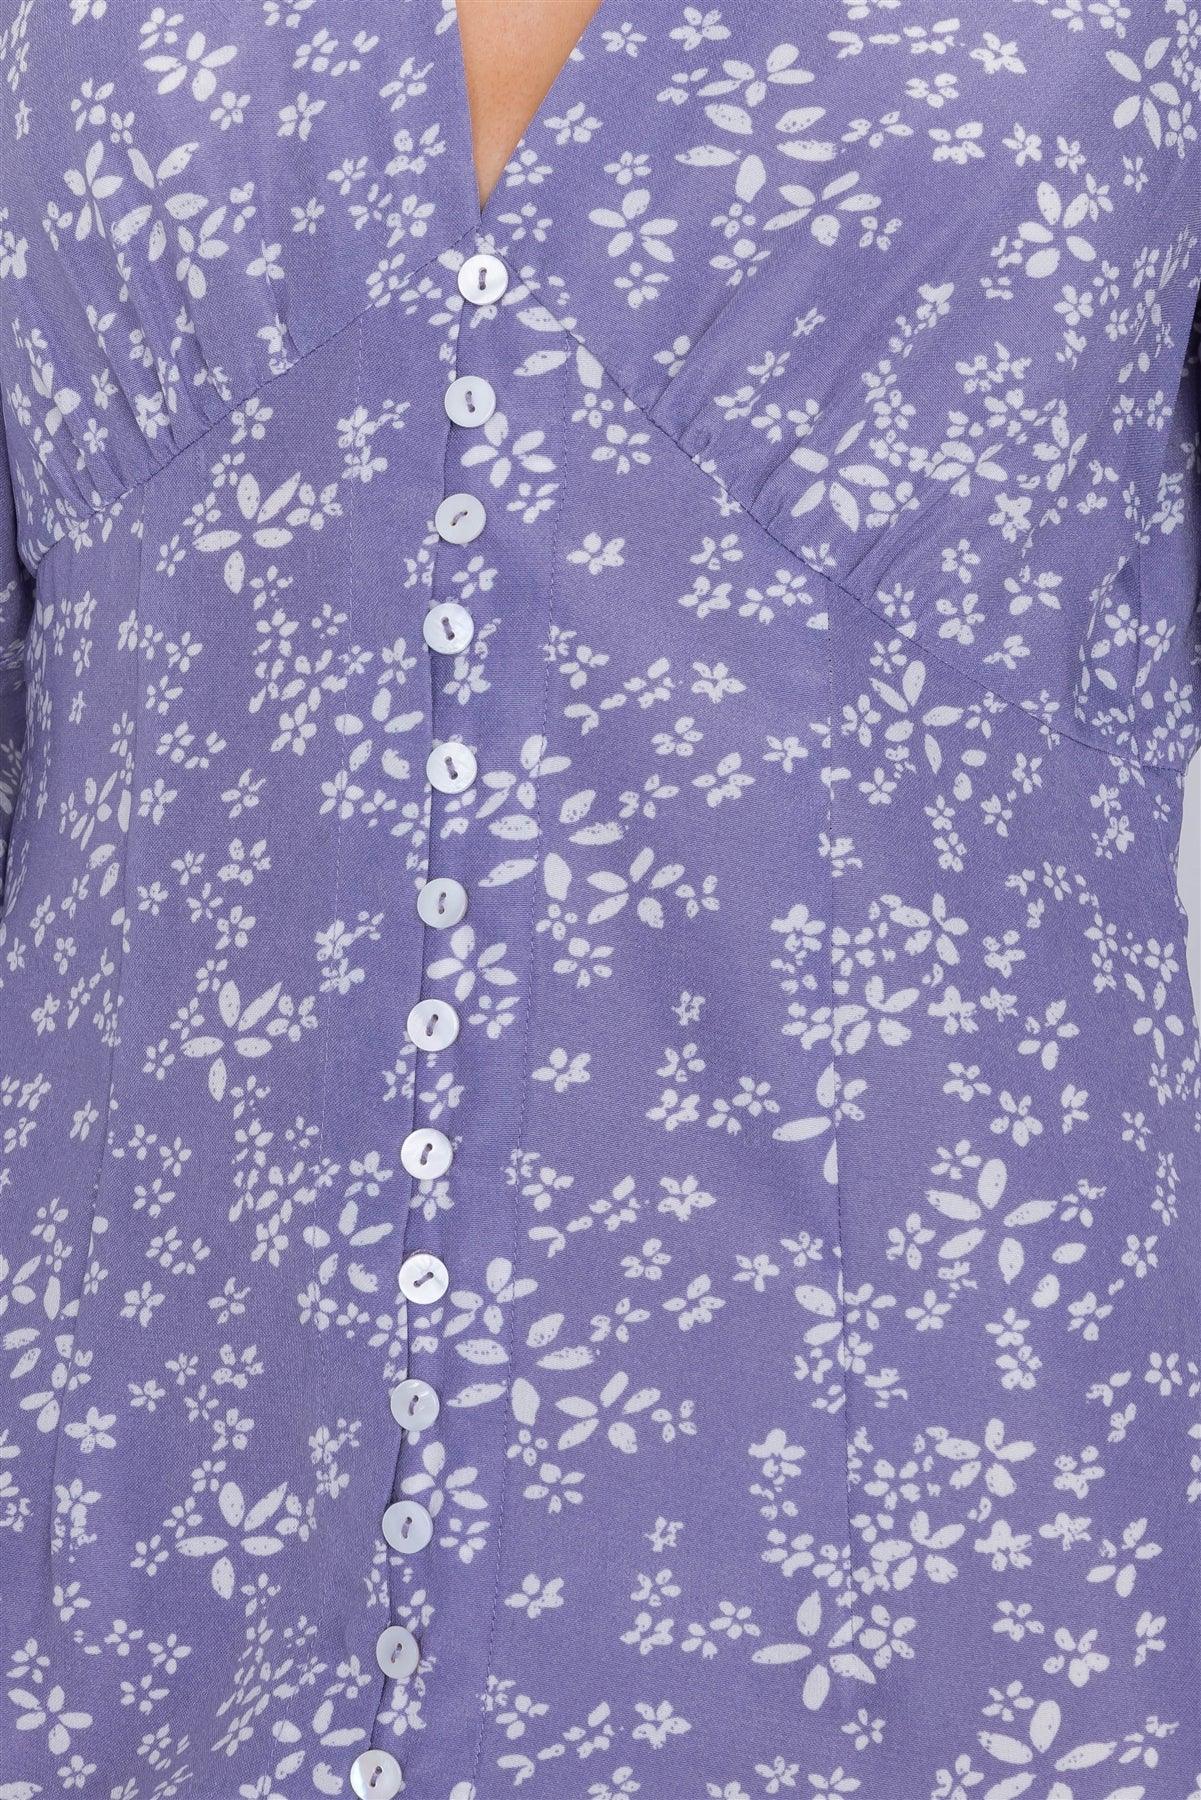 Lavender White Modern Floral Mid Center Slit Chic Midi Dress  /3-2-1